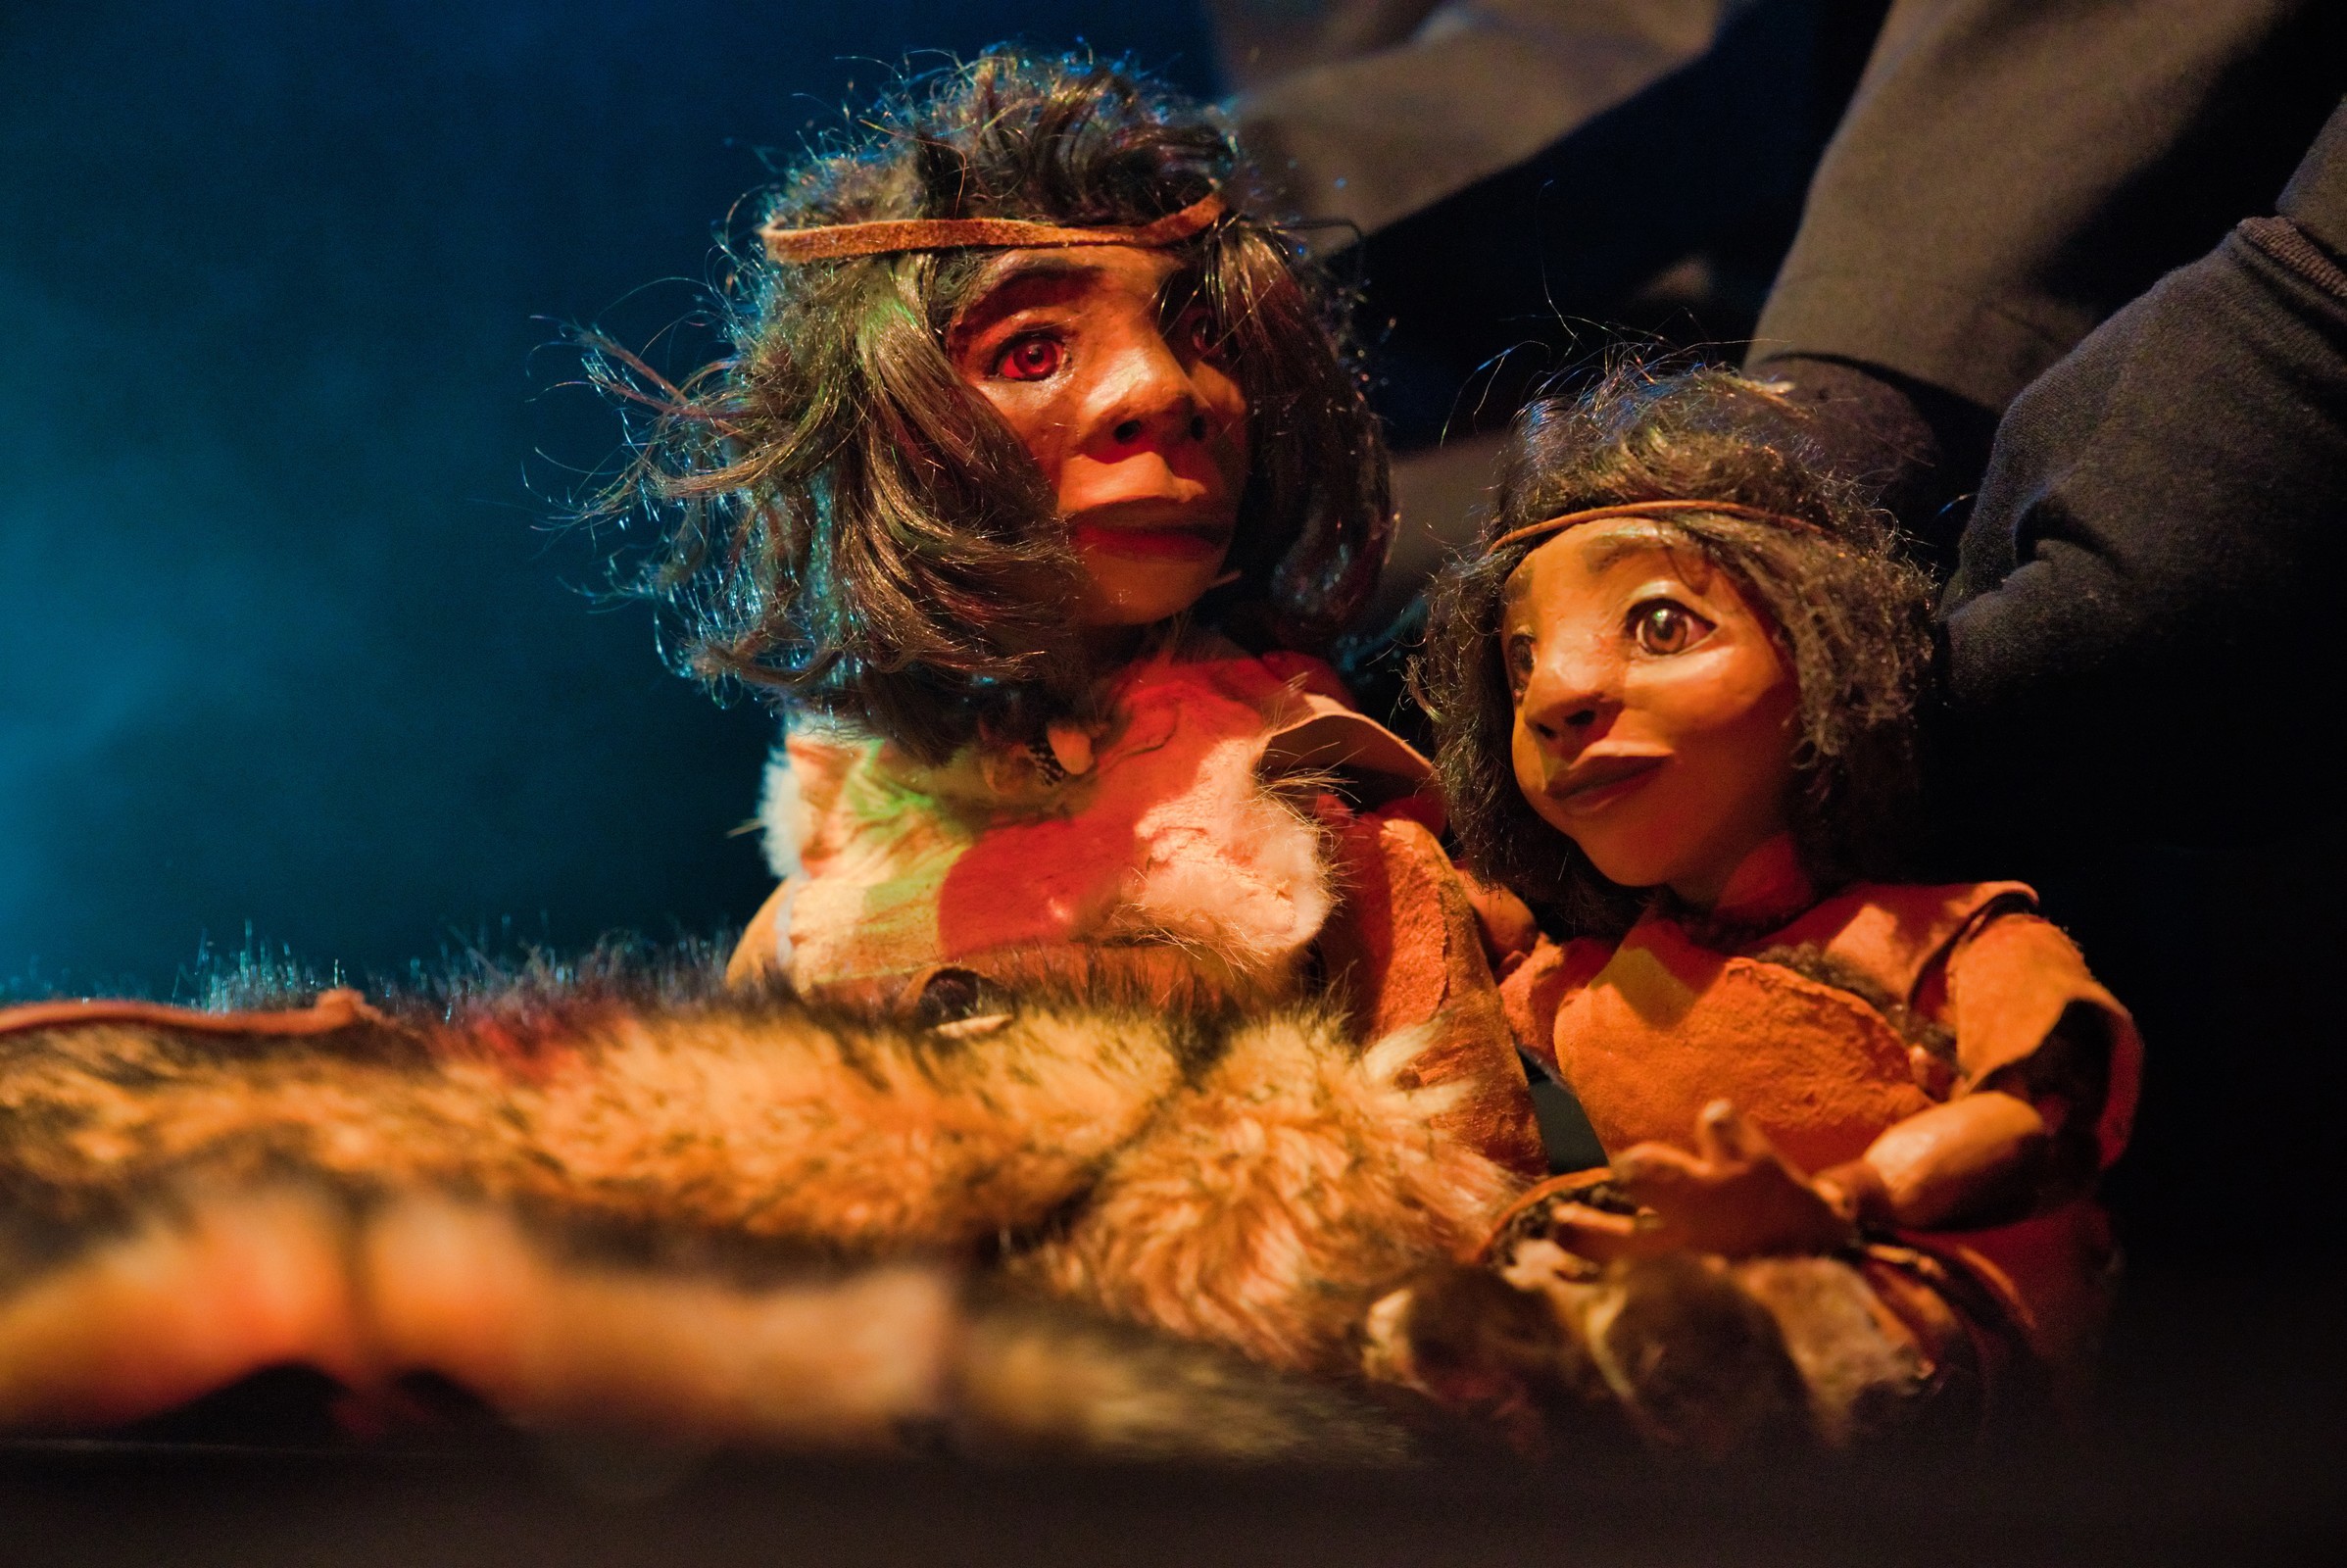 Espetáculo “O menino do Lapedo”, por Valdevinos Teatro de Marionetas